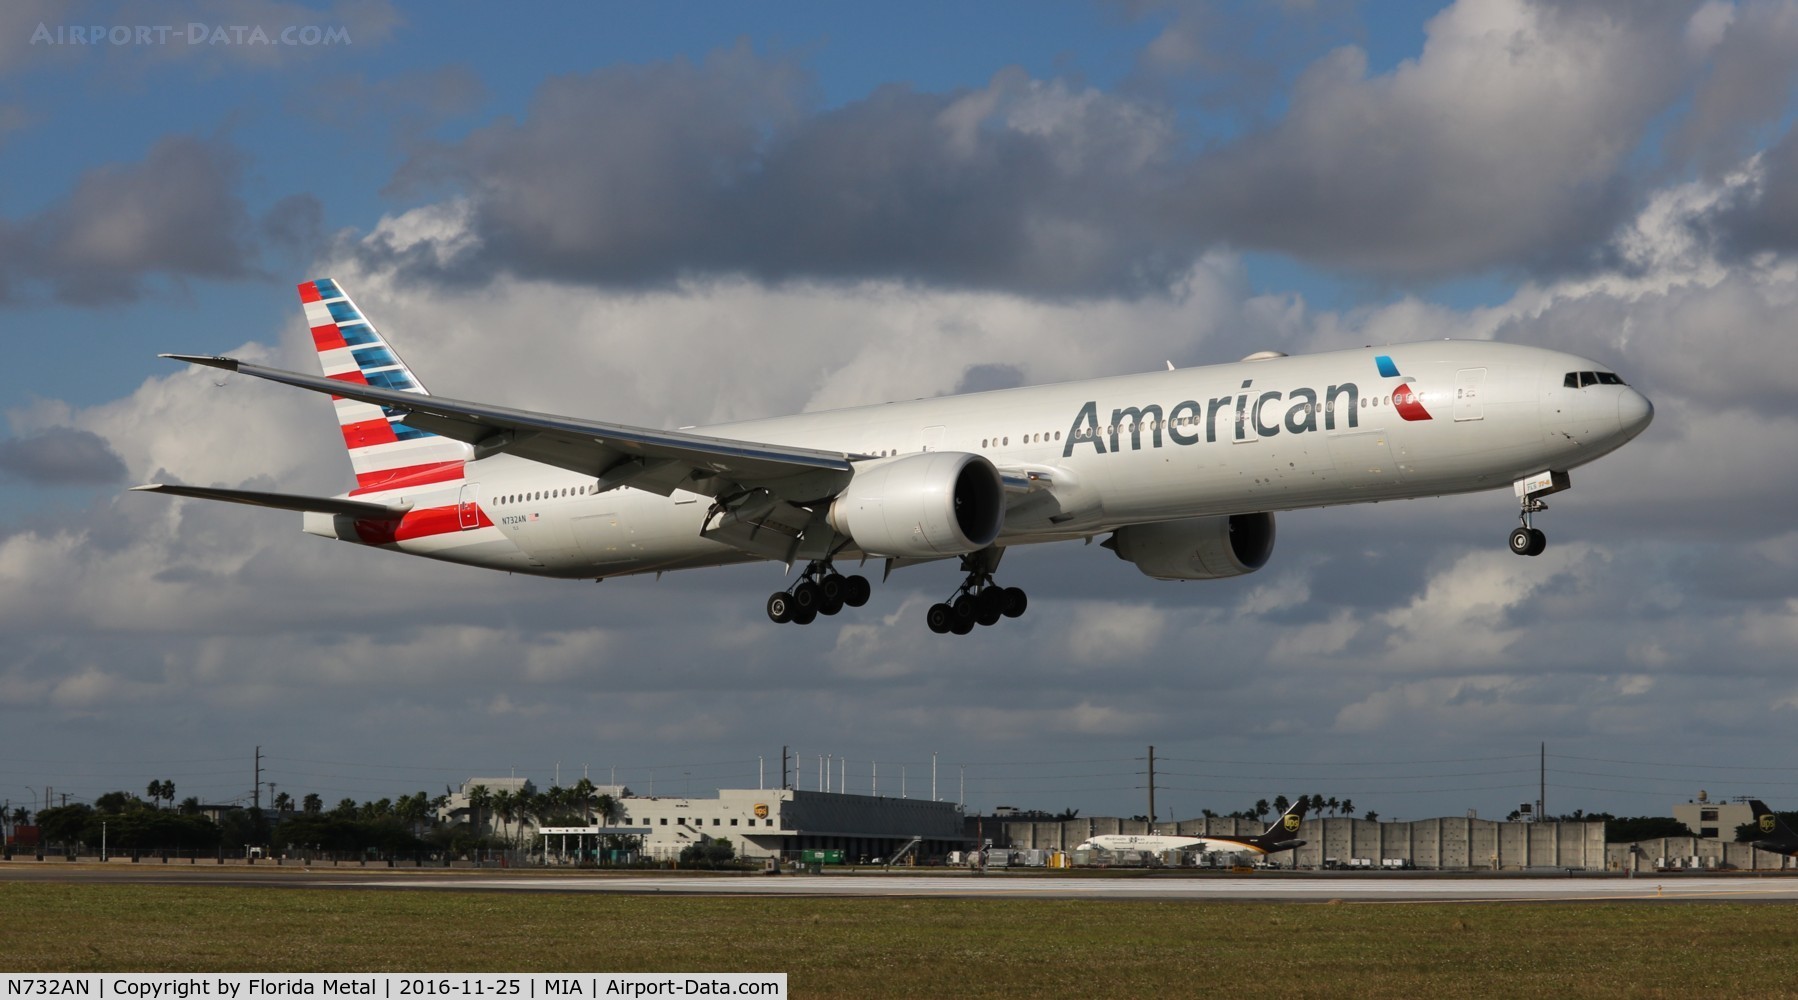 N732AN, 2014 Boeing 777-323/ER C/N 31549, American